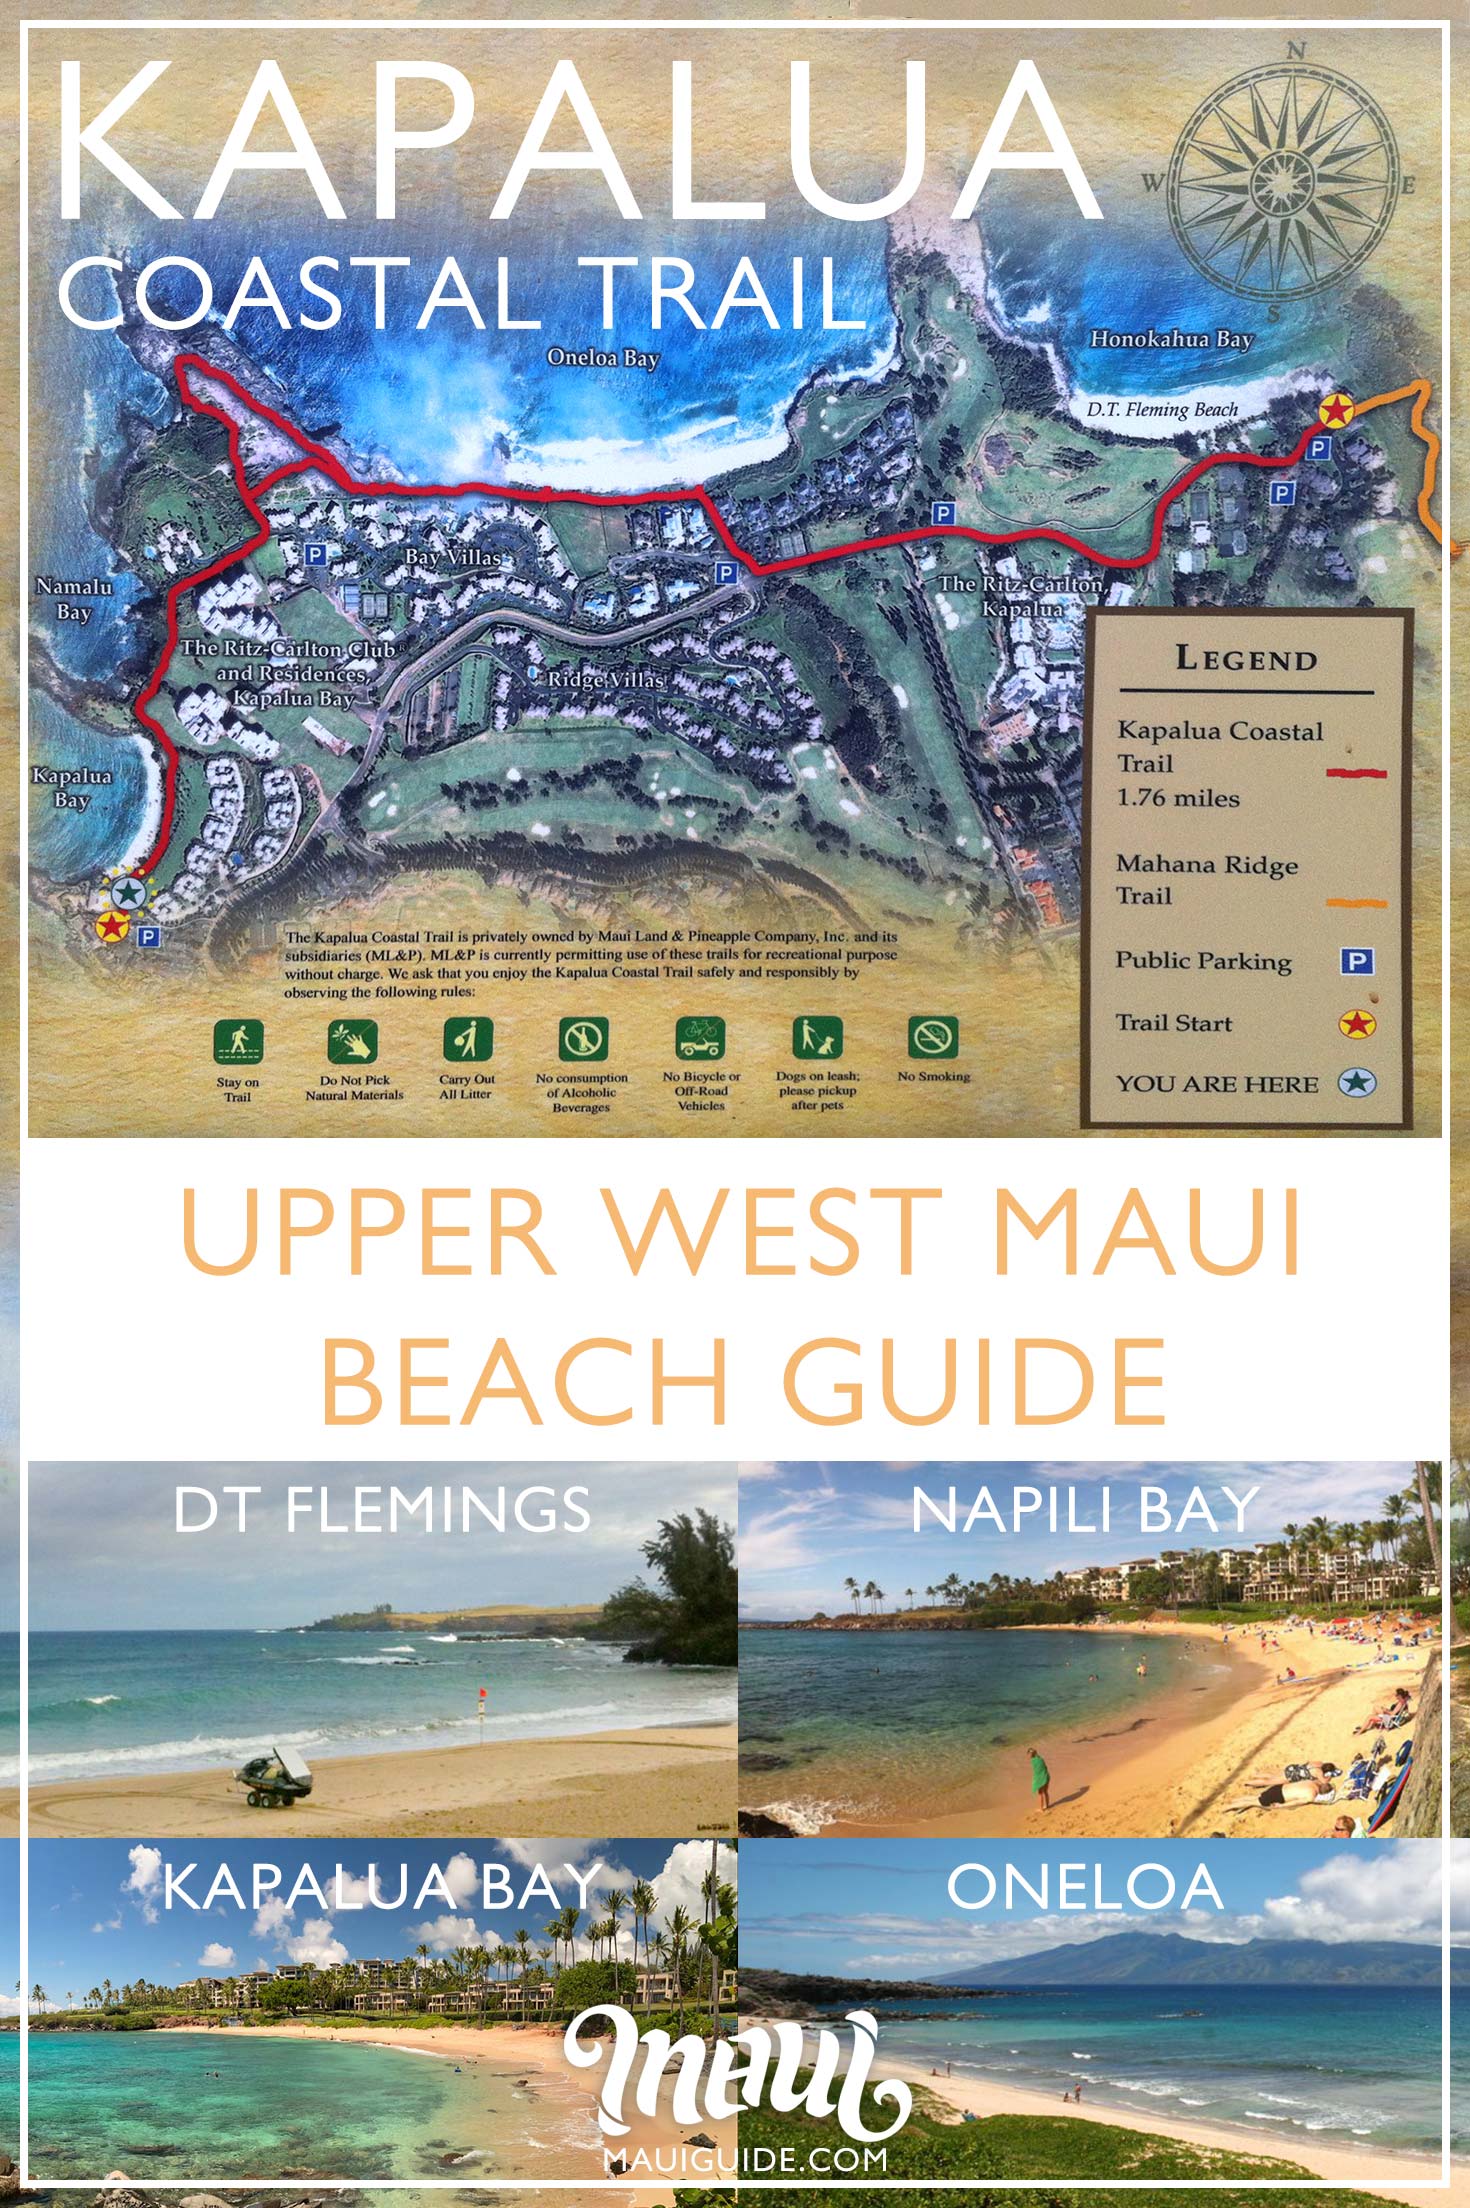 Kapalua Coastal Trail and west Maui beaches